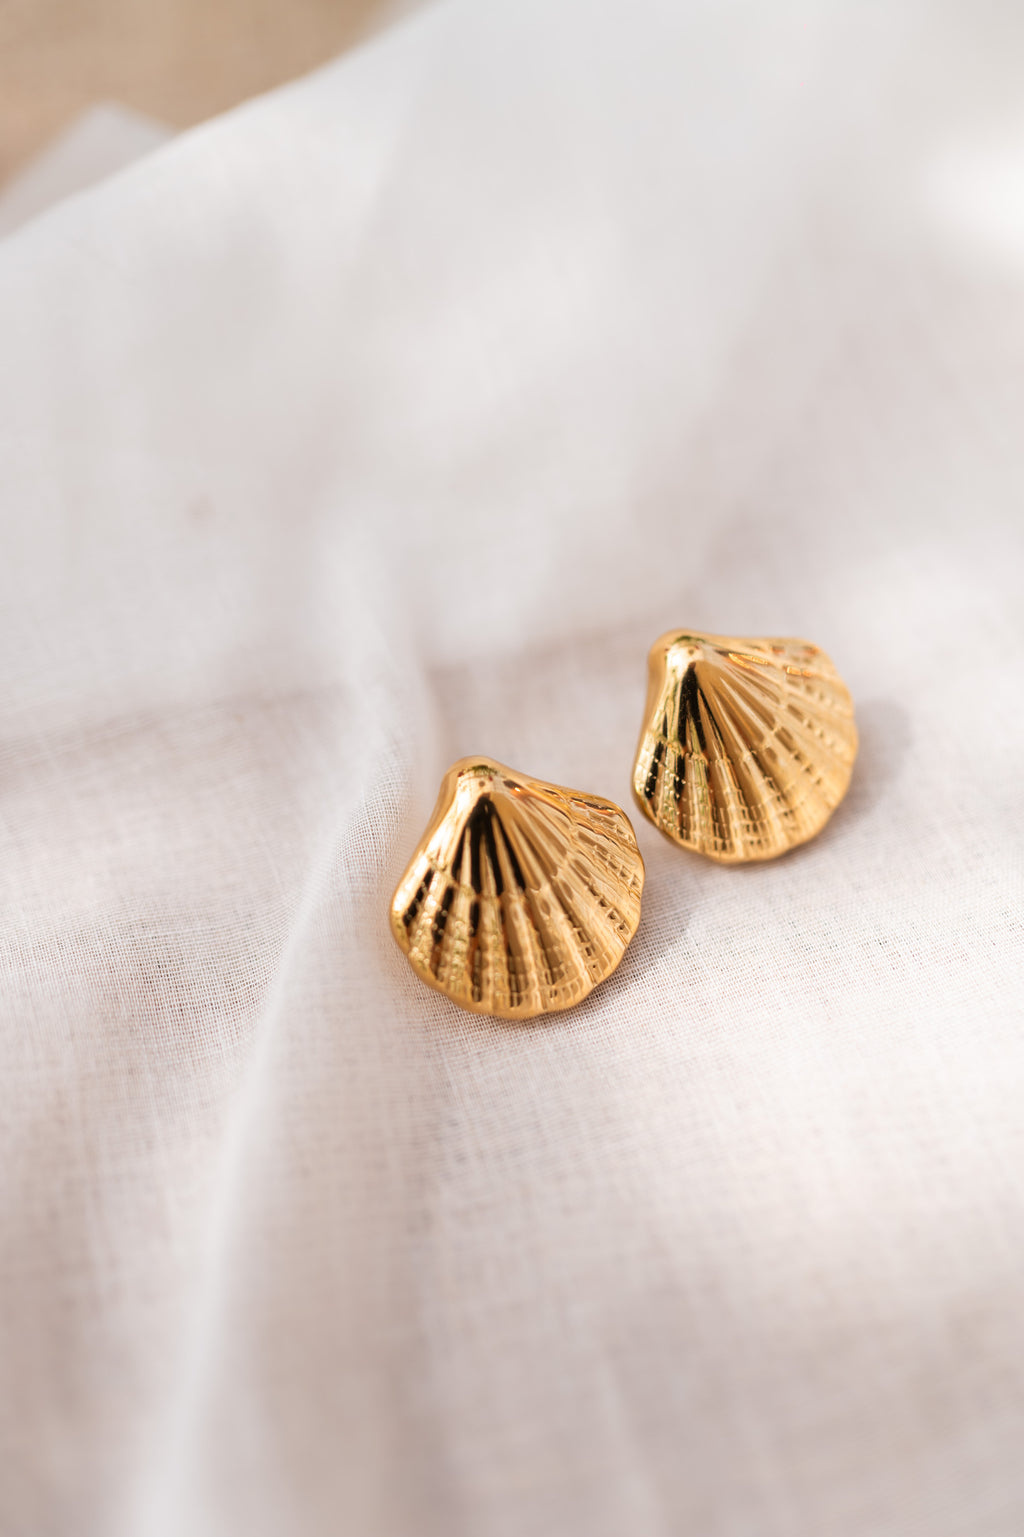 Shell earrings - golden